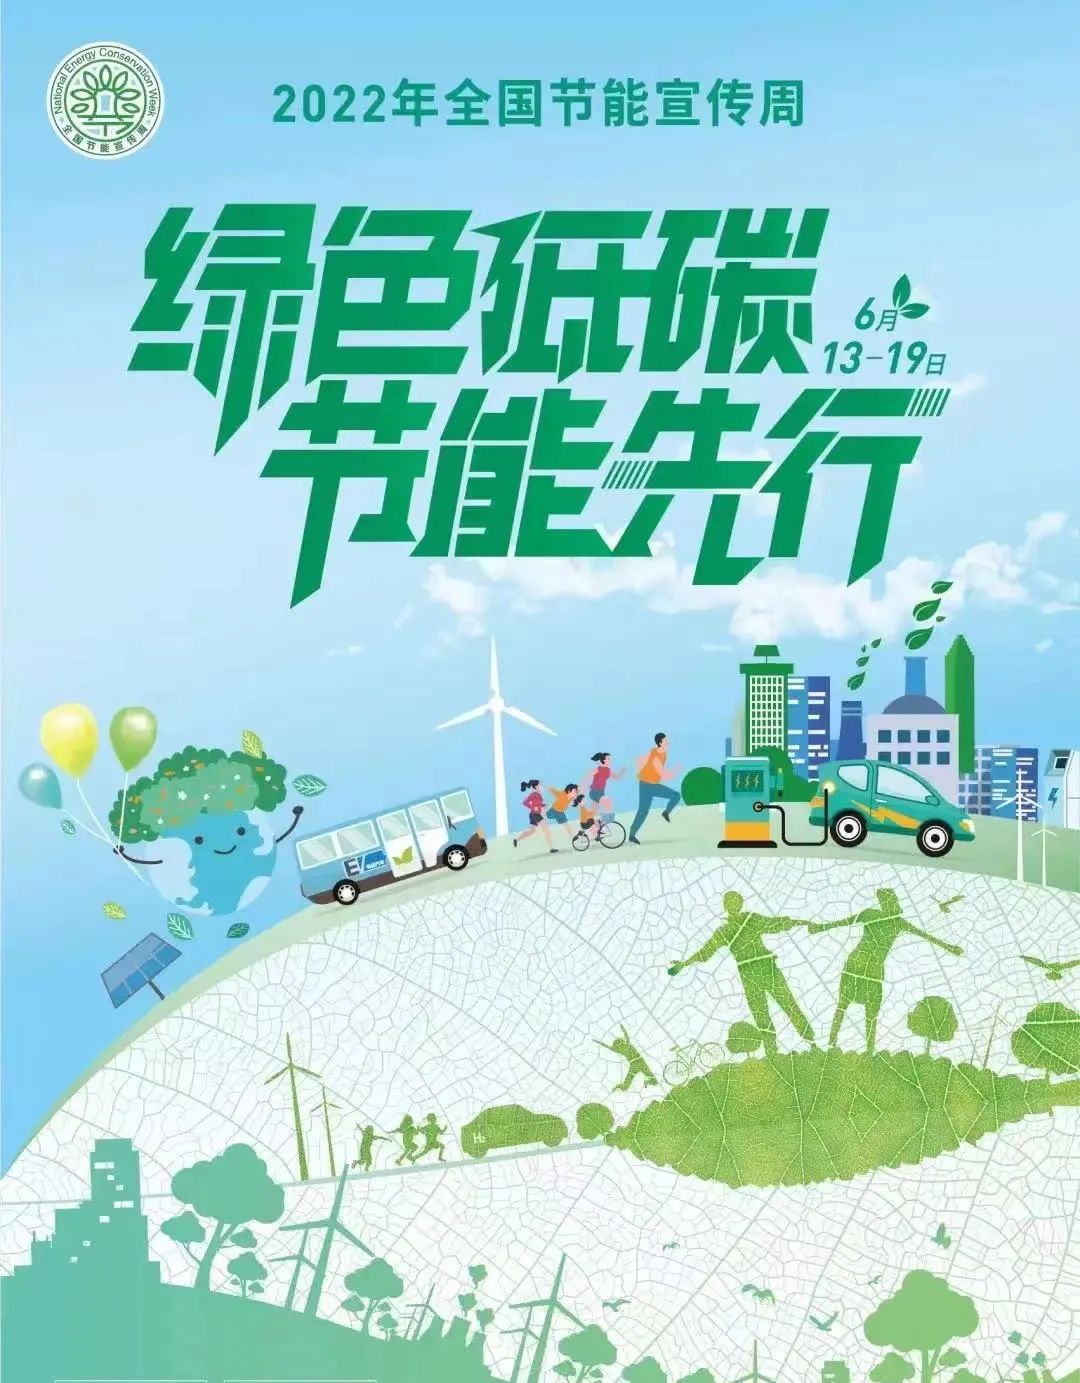 “绿色低碳，节能先行” ——致太阳集团tyc5997全体师生的节能低碳倡议书